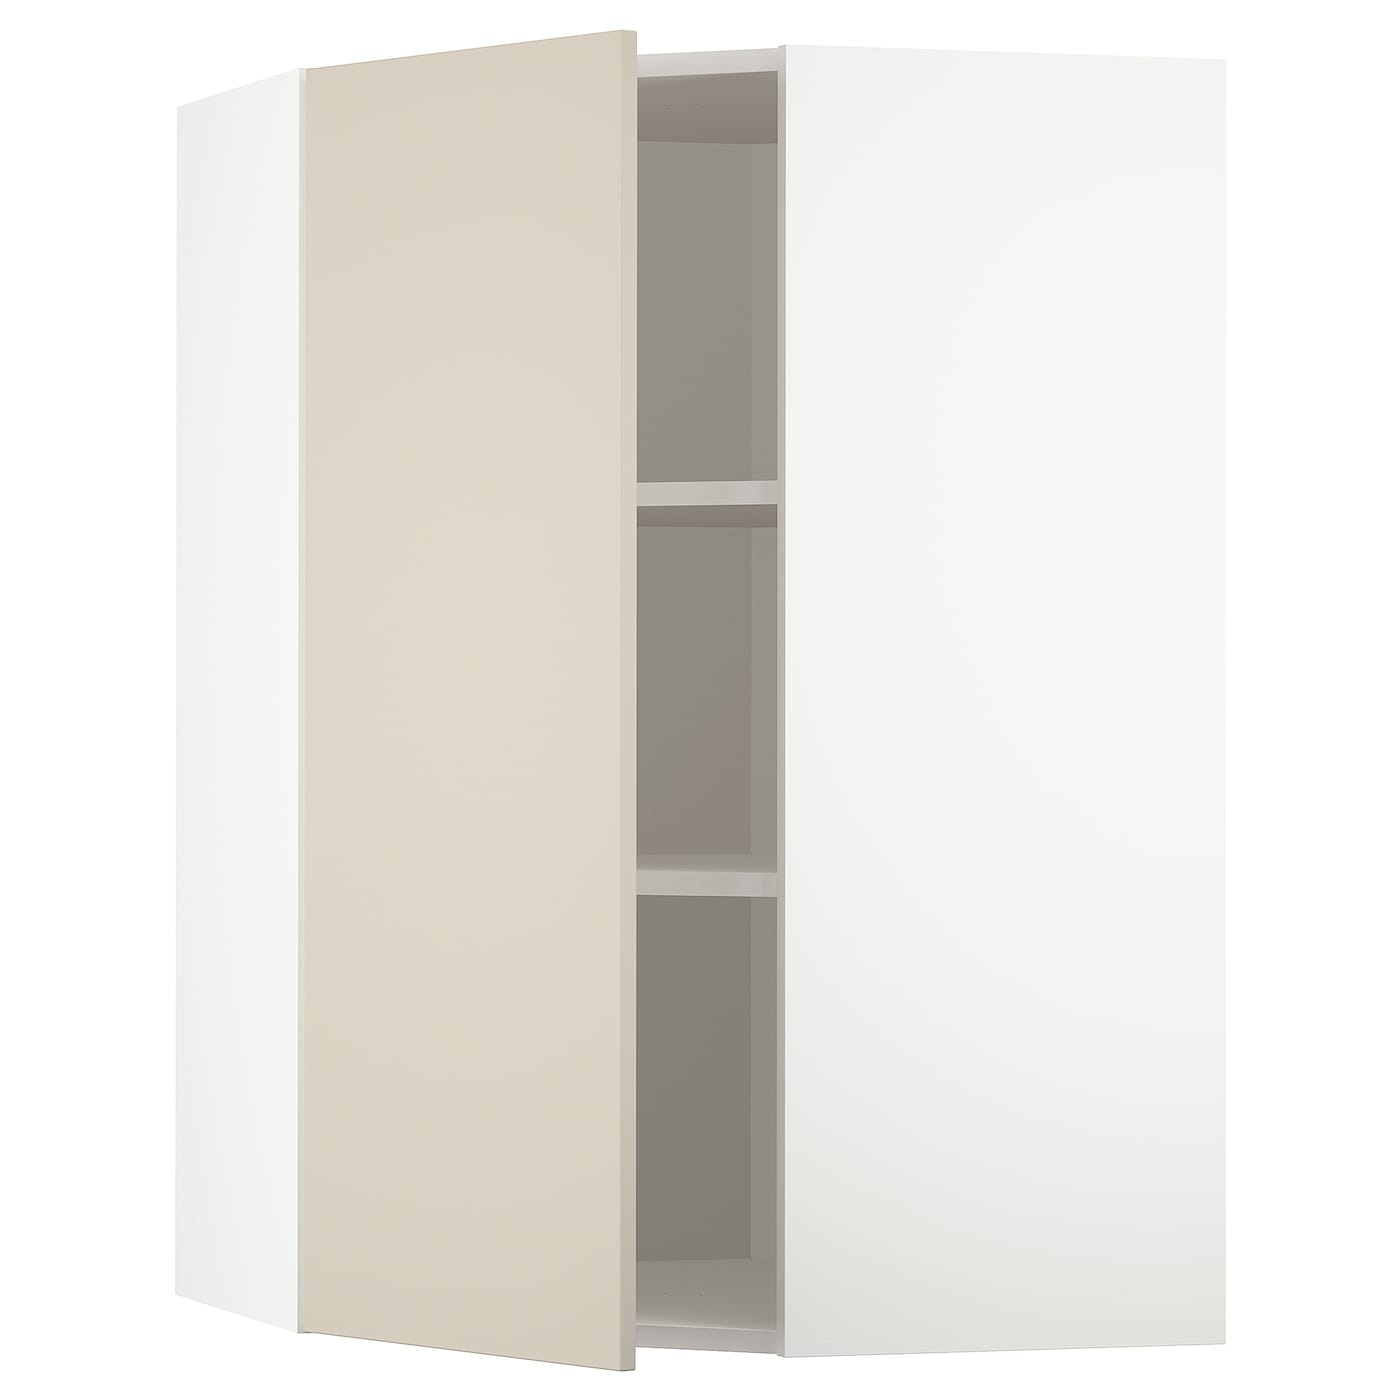 Угловой навесной шкаф с полками - METOD  IKEA/  МЕТОД ИКЕА, 100х68 см, белый/бежевый